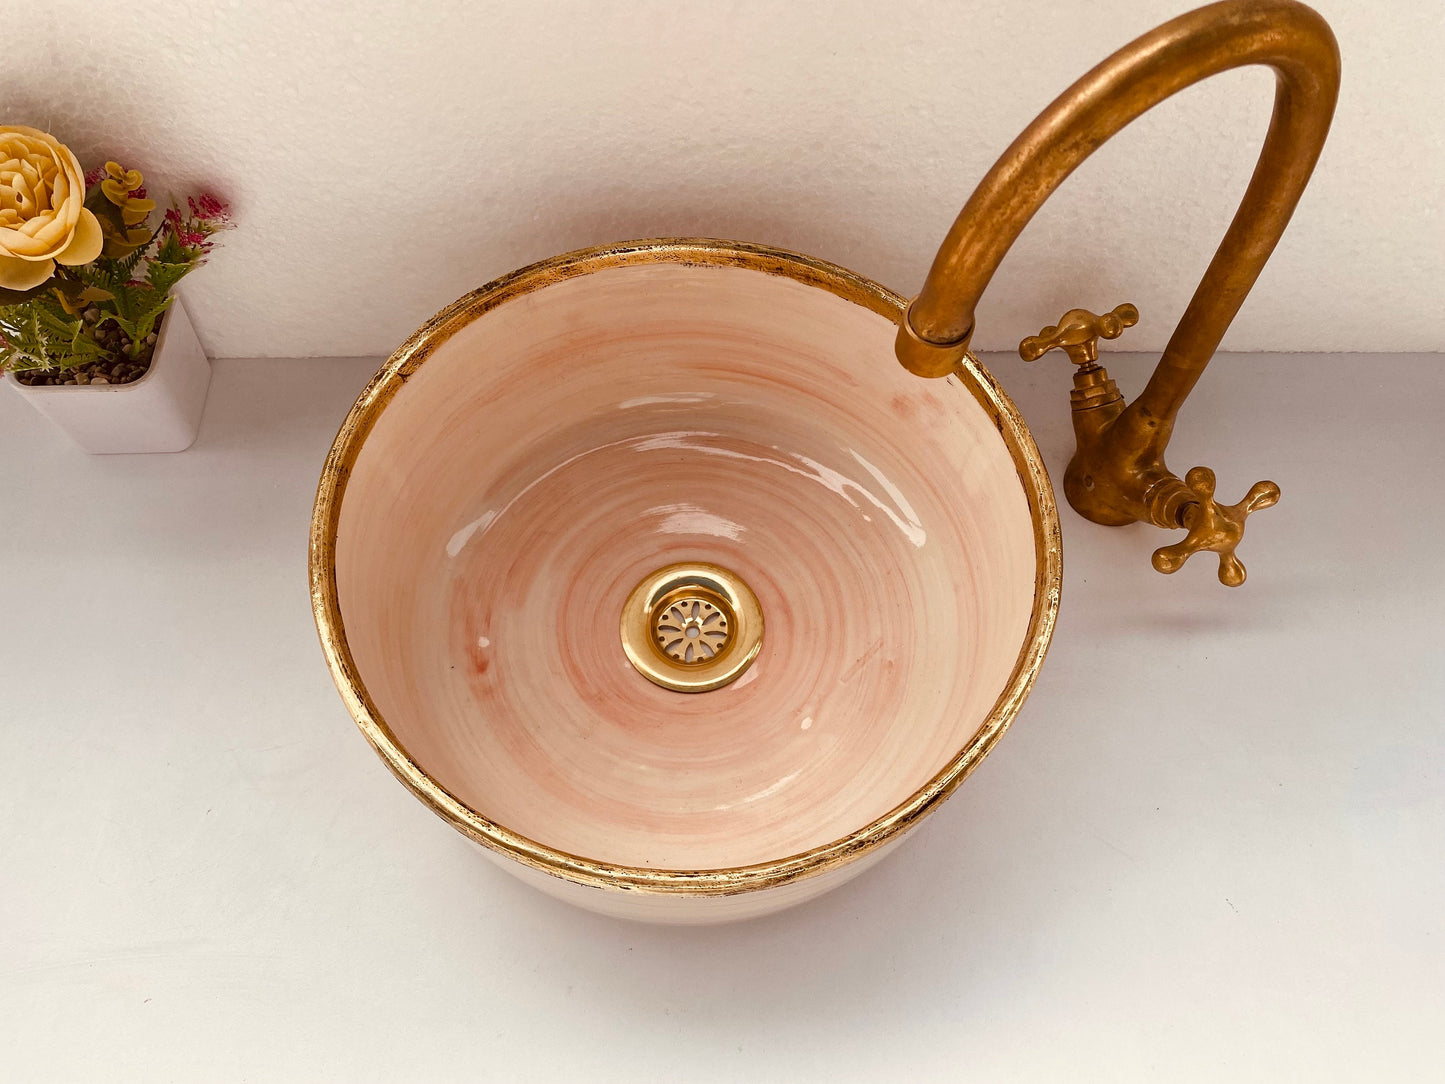 Lavabo de salle de bain rose en laiton massif brossé avec rebord - lavabo avec moderne du milieu du siècle - bassin de ferme artisanale cadeau gratuit avec